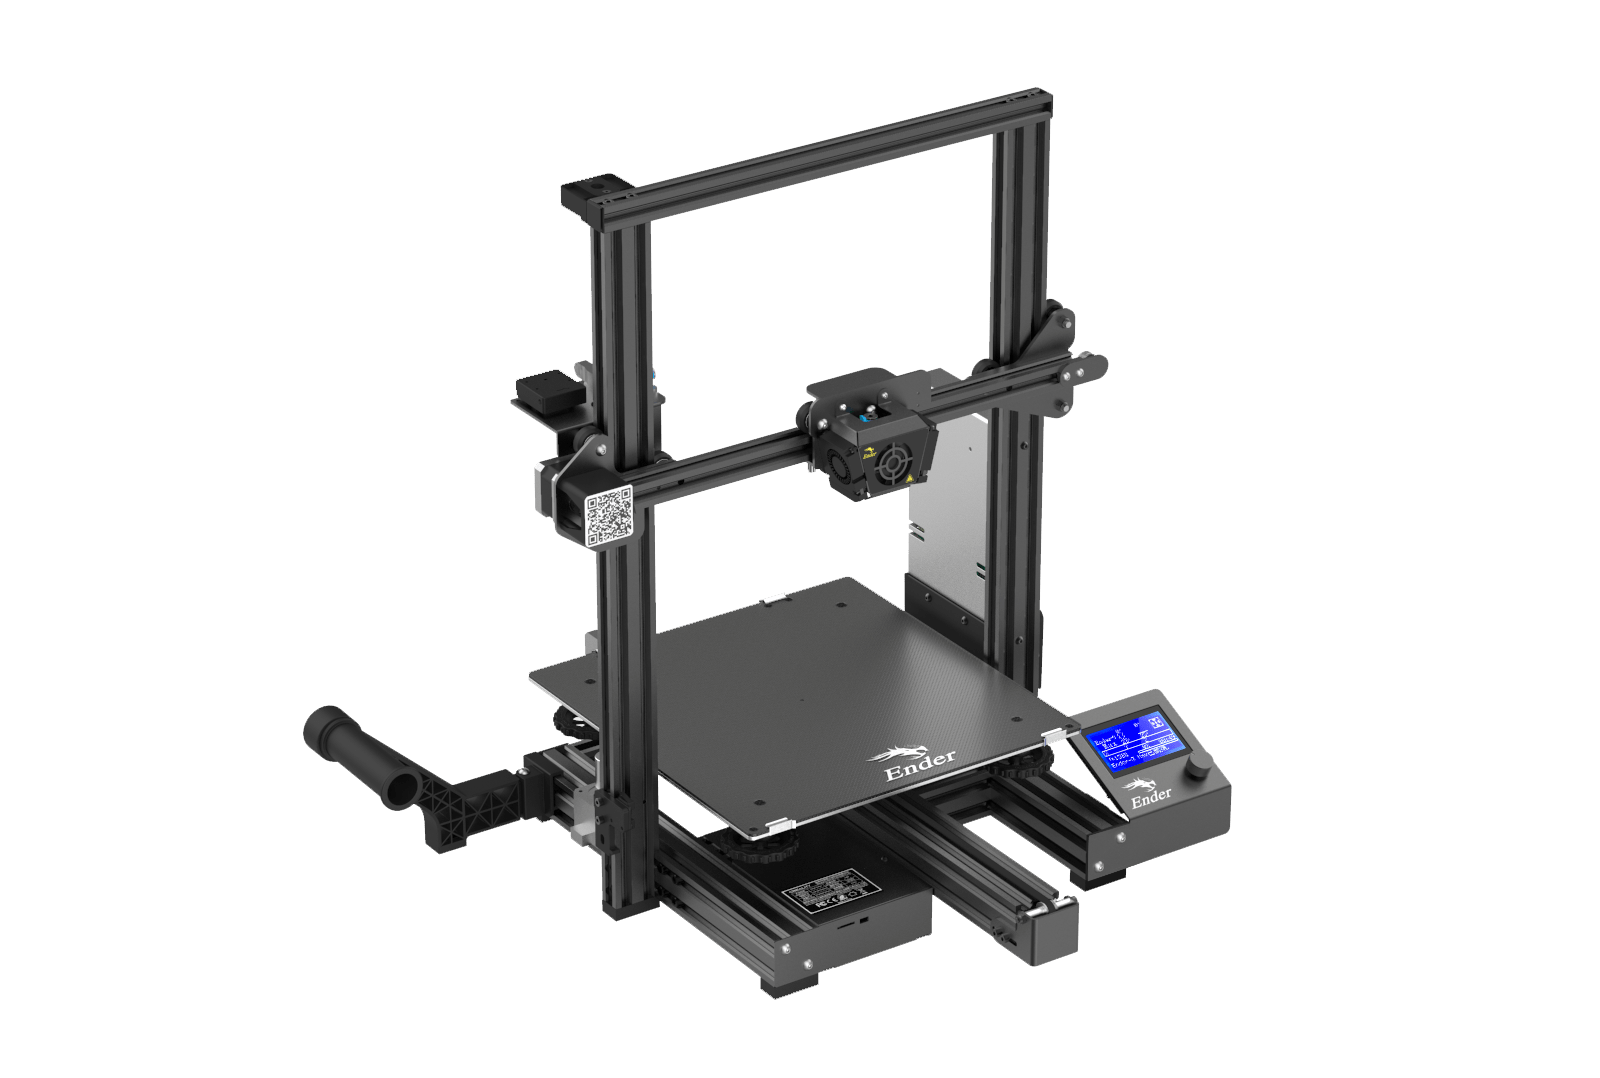 Imprimante 3D Creality Ender-3 V3 SE - La référence pour l